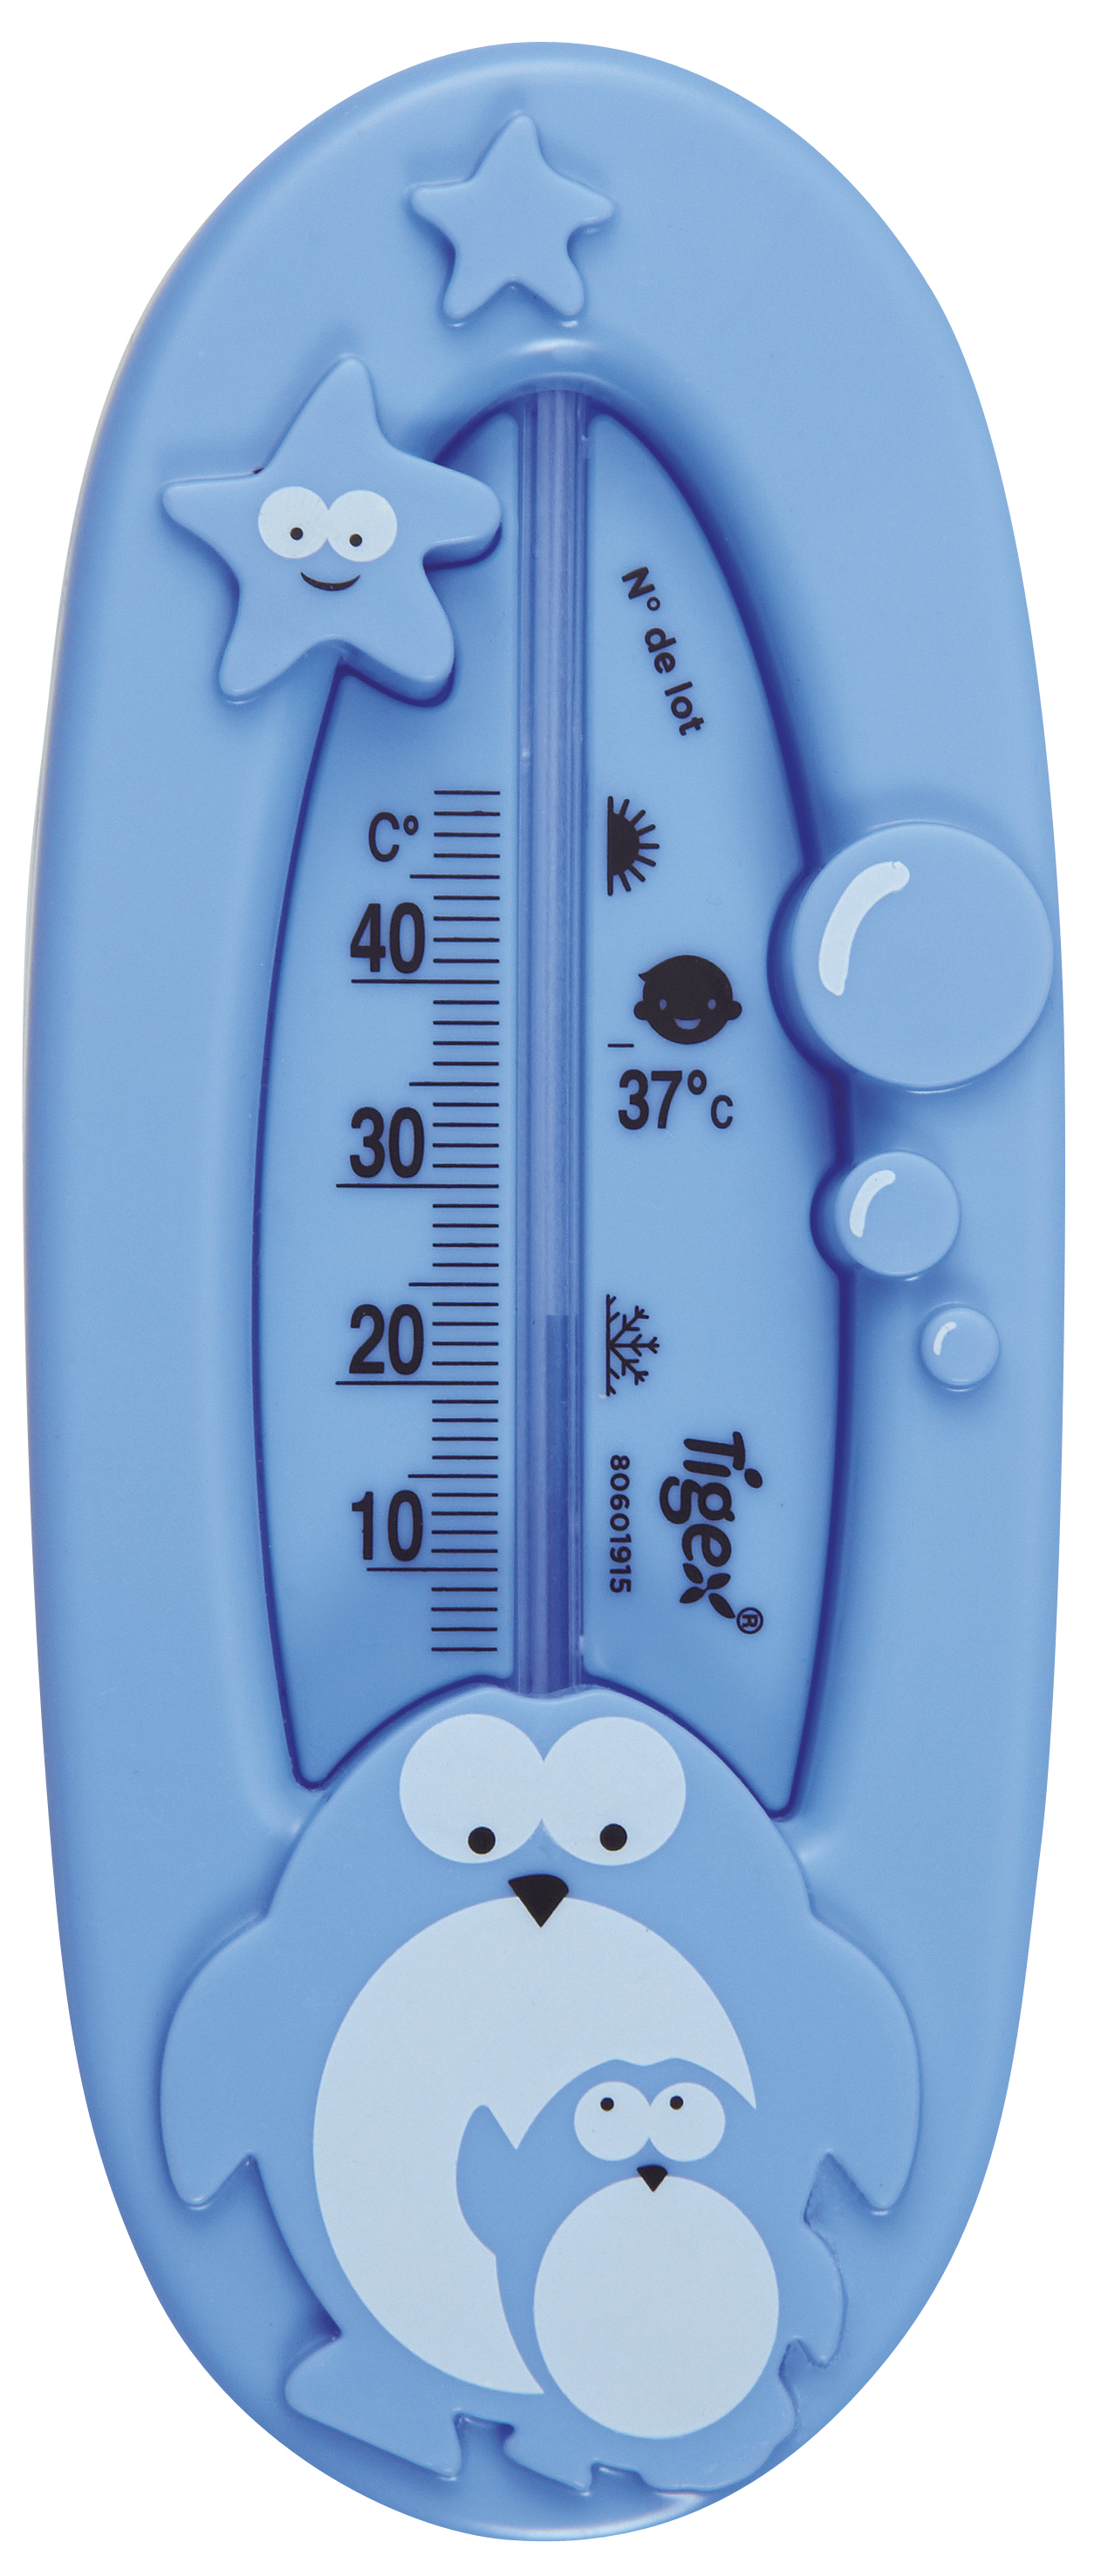  Thermomètres de bain : Bébé et Puériculture